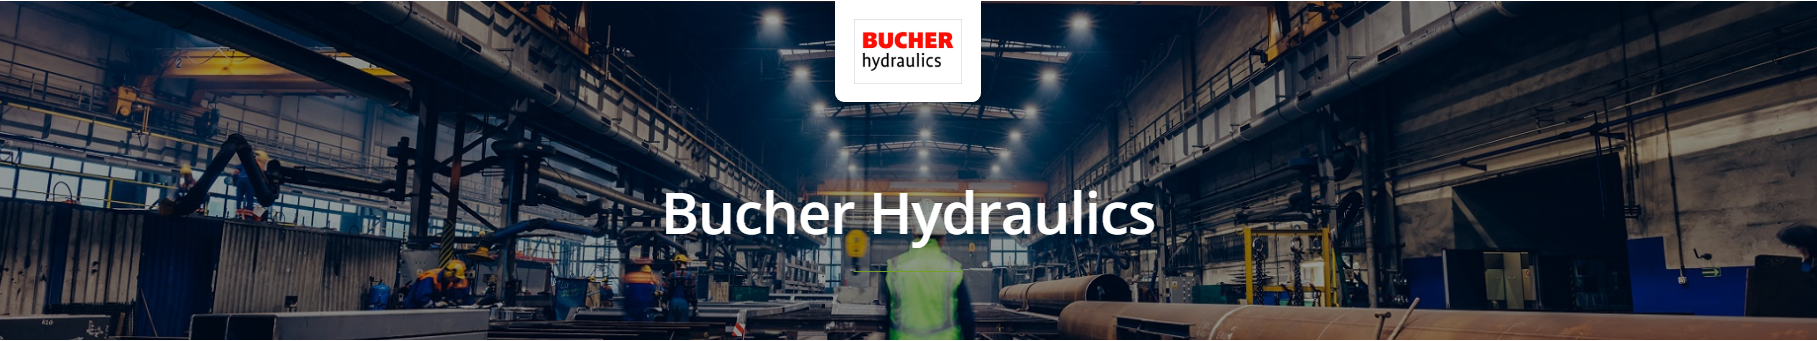 Bucher Hydraulics Power Units